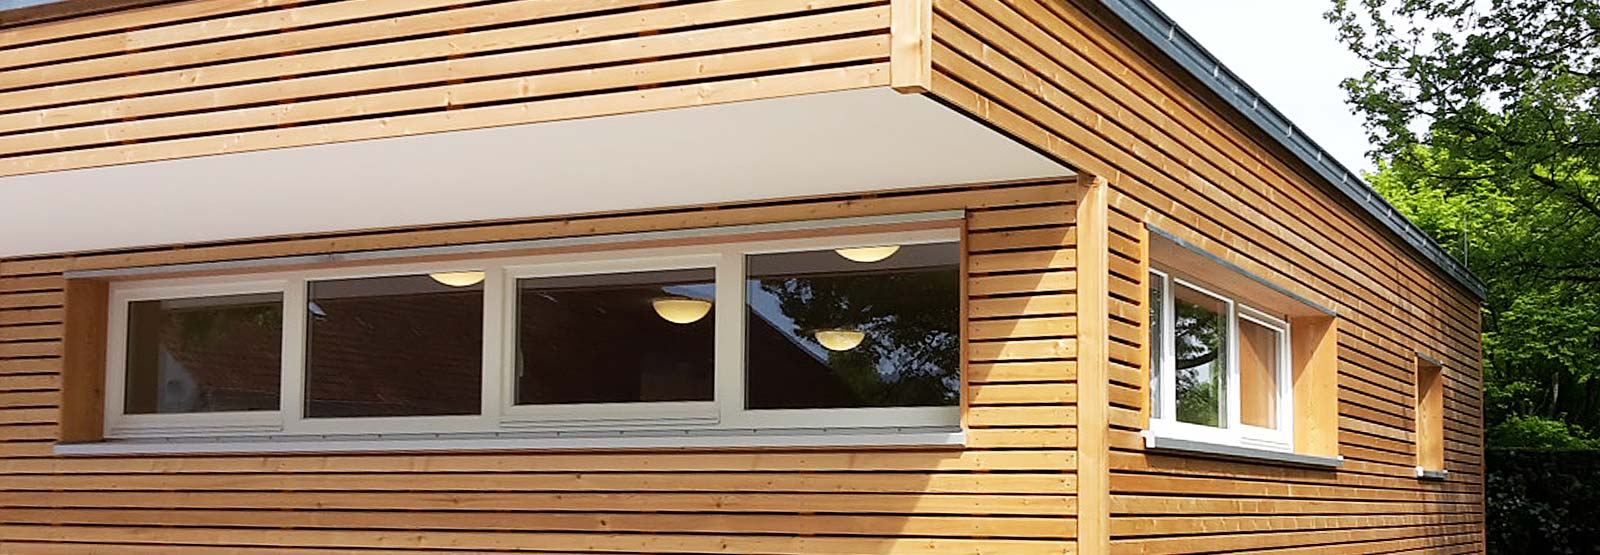 Header Bautischlerei – Fassadenverkleidung aus Holz